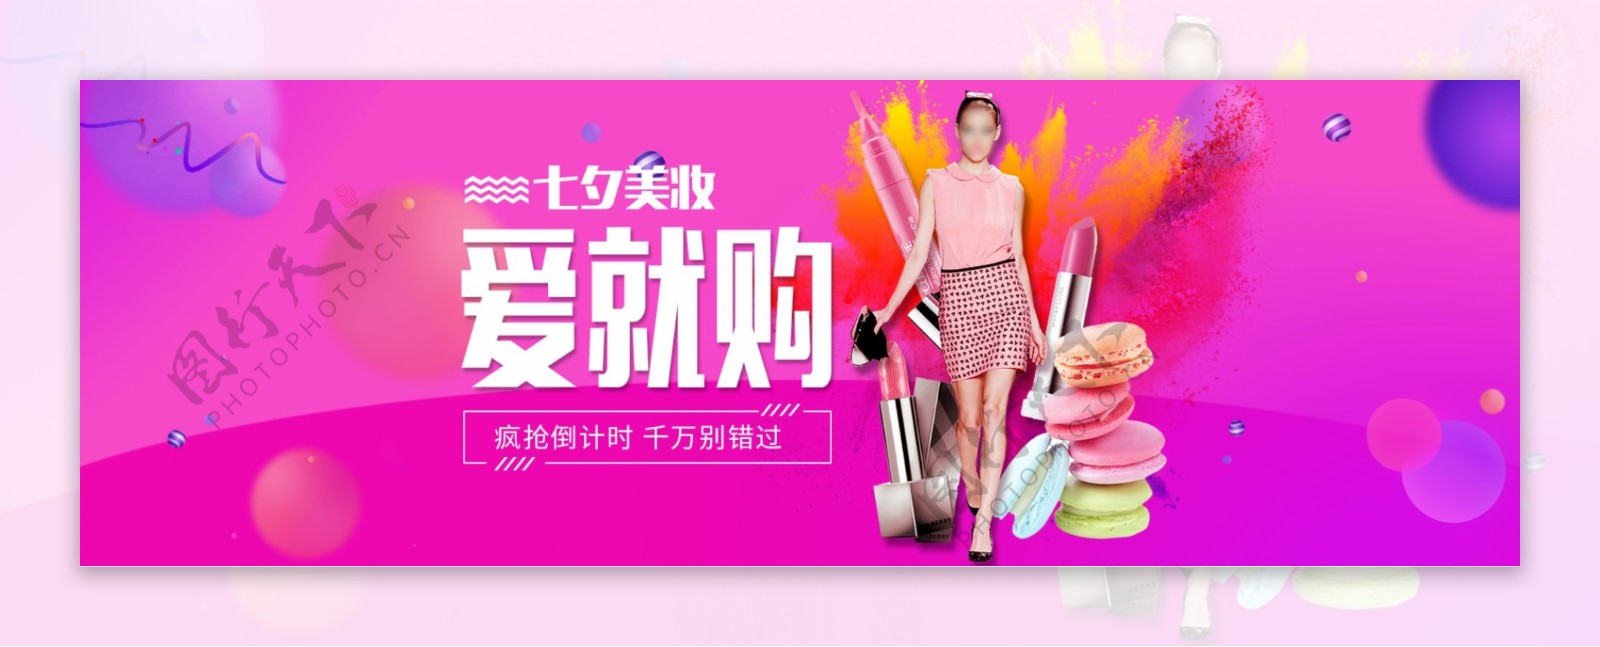 淘宝天猫化妆品七夕促销活动海报设计模板banner